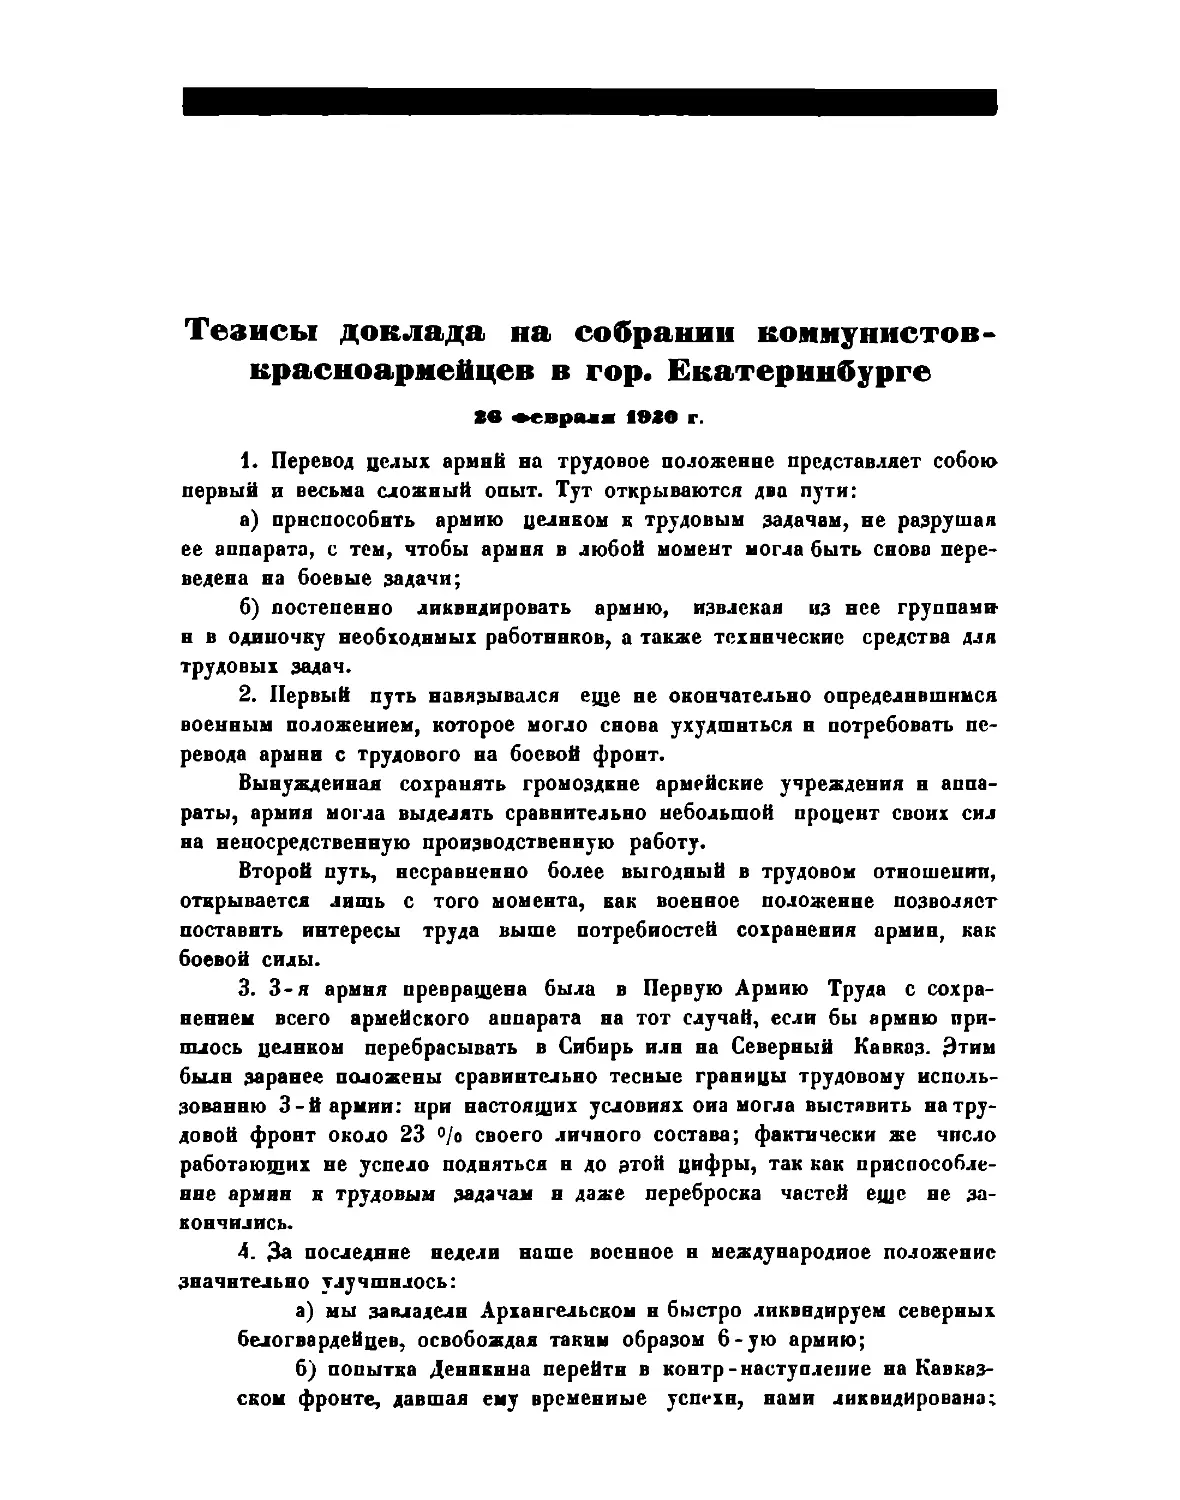 Тезисы доклада на собрании конмуиистов-красноармейцев в г. Екатеринбурге26 февраля 1920 г.